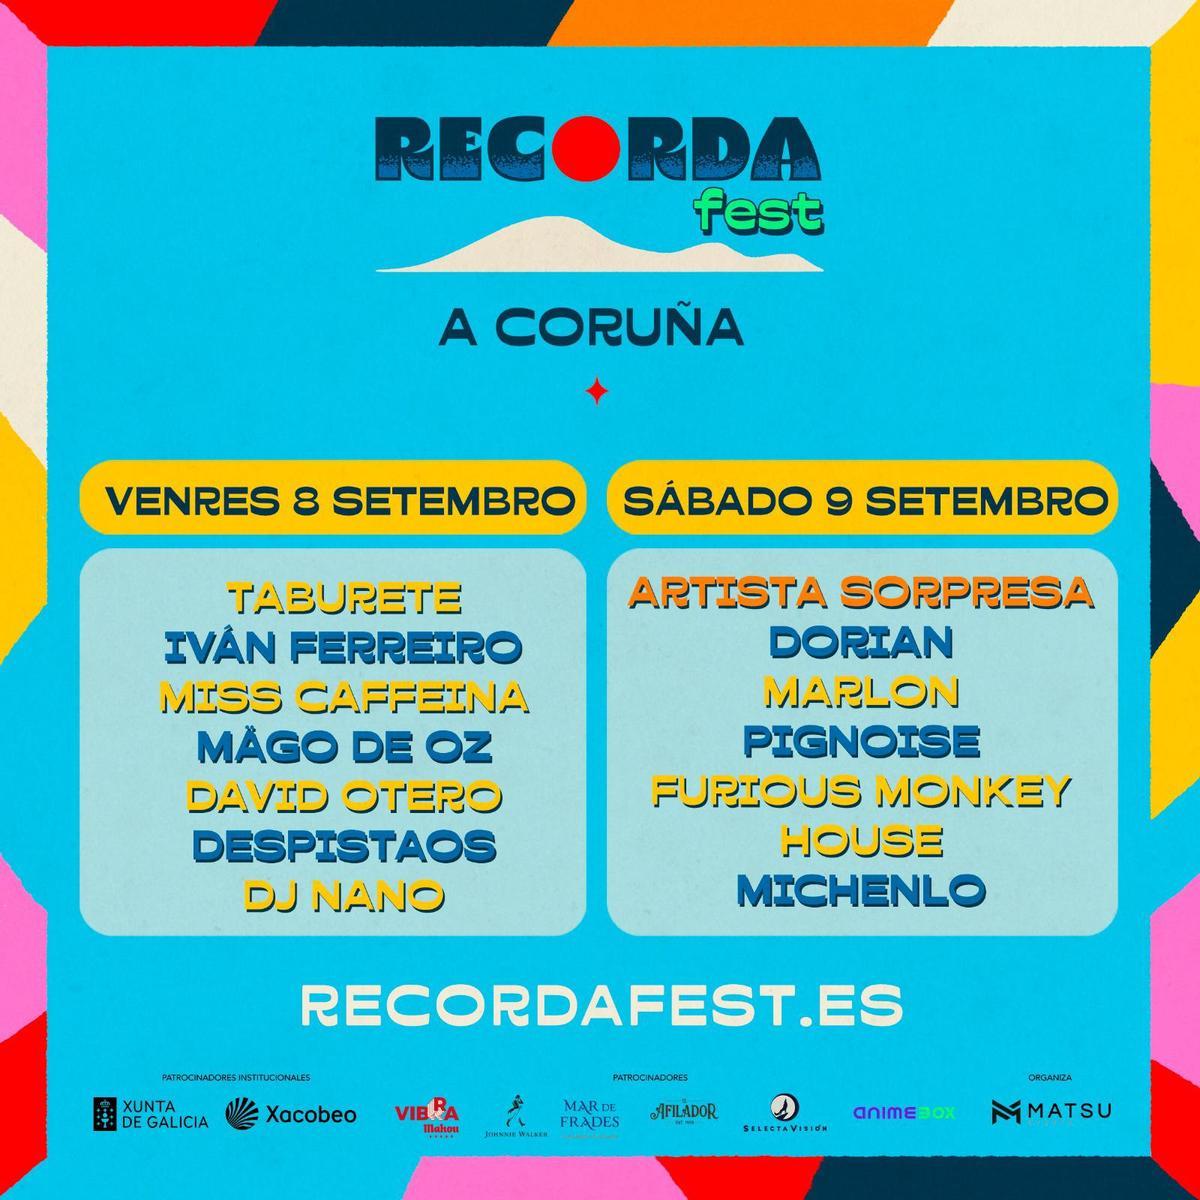 A la venta las entradas para el Recorda Fest de A Coruña.